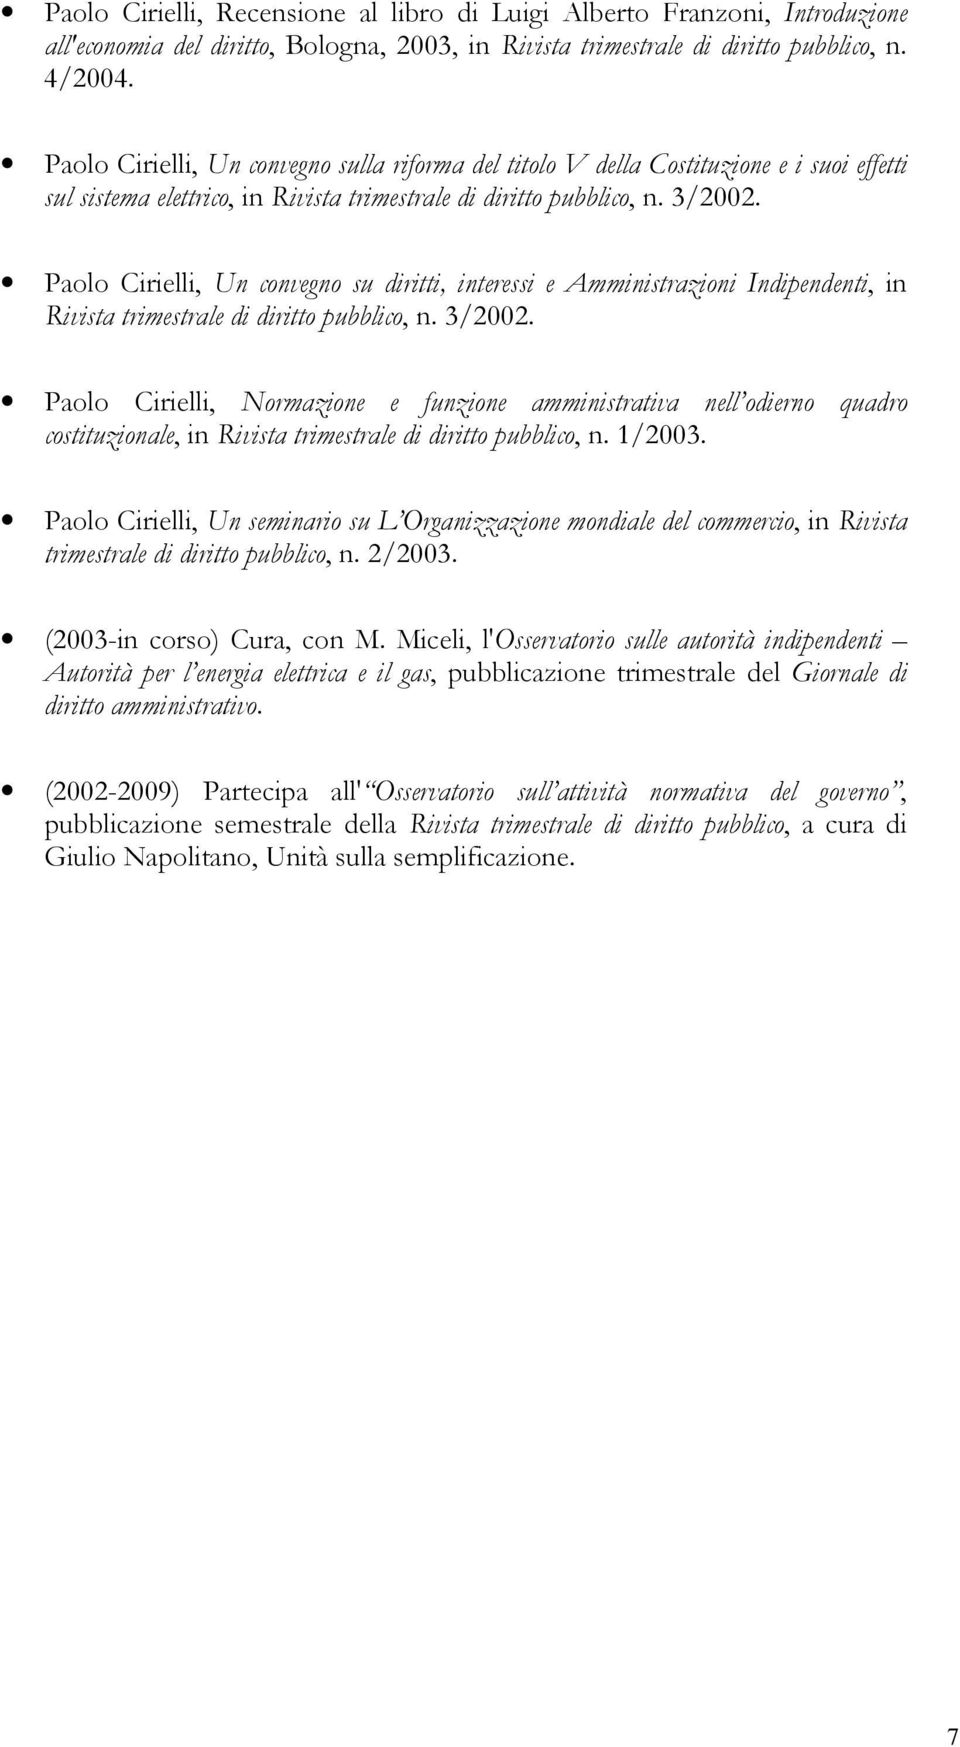 Paolo Cirielli, Un convegno su diritti, interessi e Amministrazioni Indipendenti, in Rivista trimestrale di diritto pubblico, n. 3/2002.